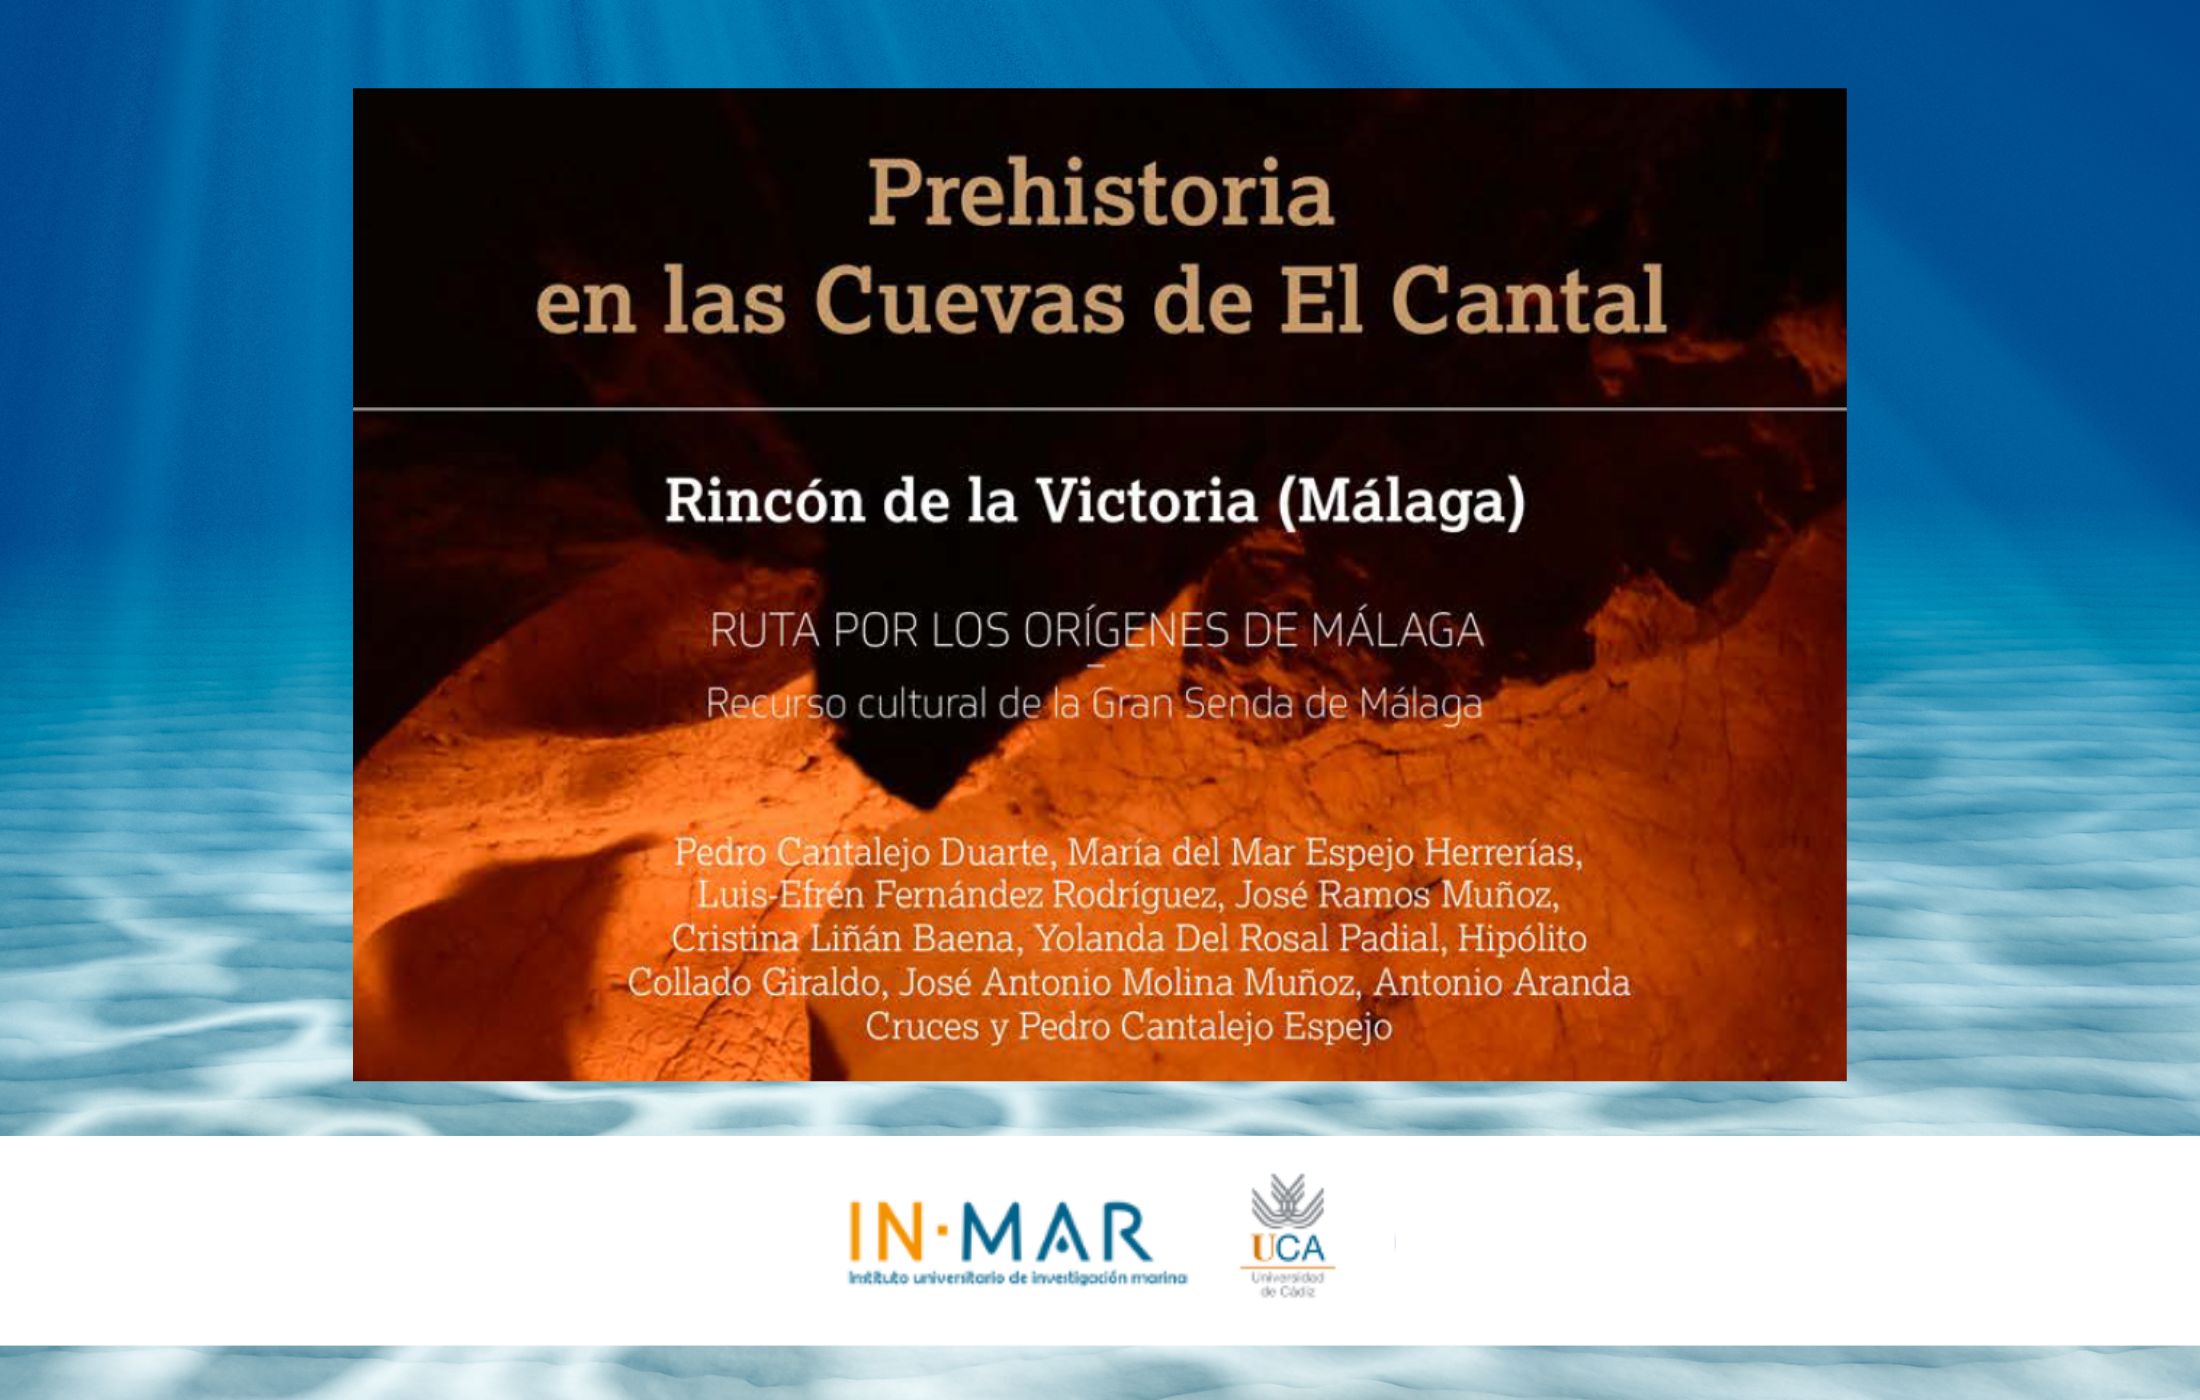 Nuevo proyecto de estudios prehistóricos en la bahía de Málaga con participación de investigadores del INMAR